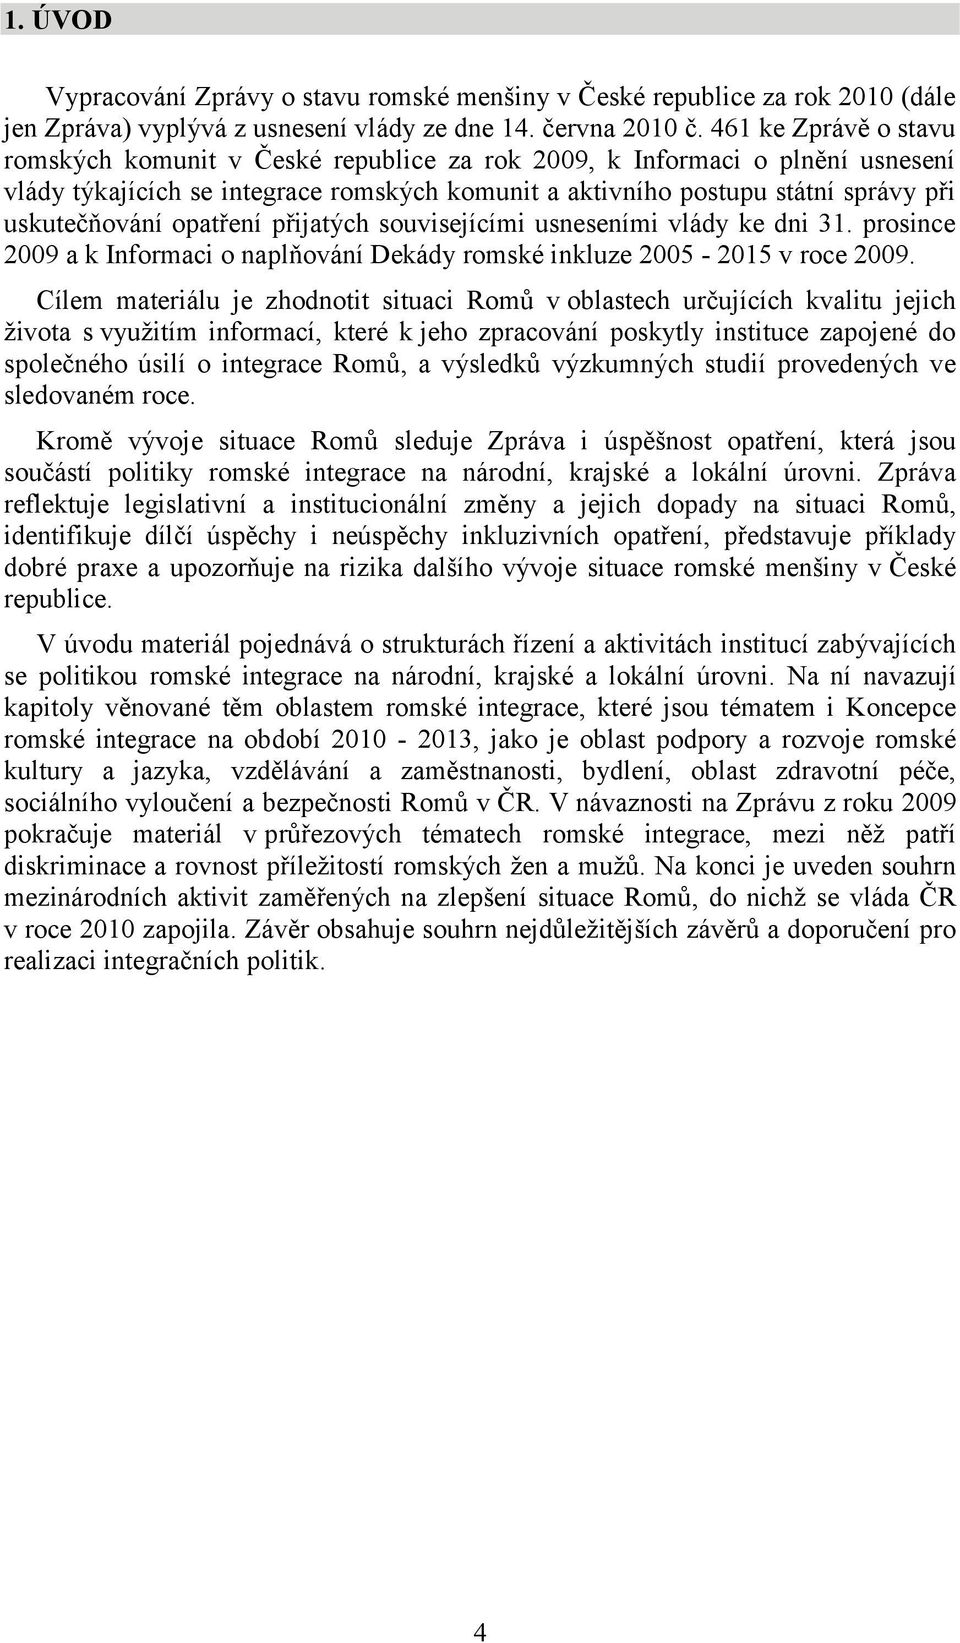 opatření přijatých souvisejícími usneseními vlády ke dni 31. prosince 2009 a k Informaci o naplňování Dekády romské inkluze 2005-2015 v roce 2009.